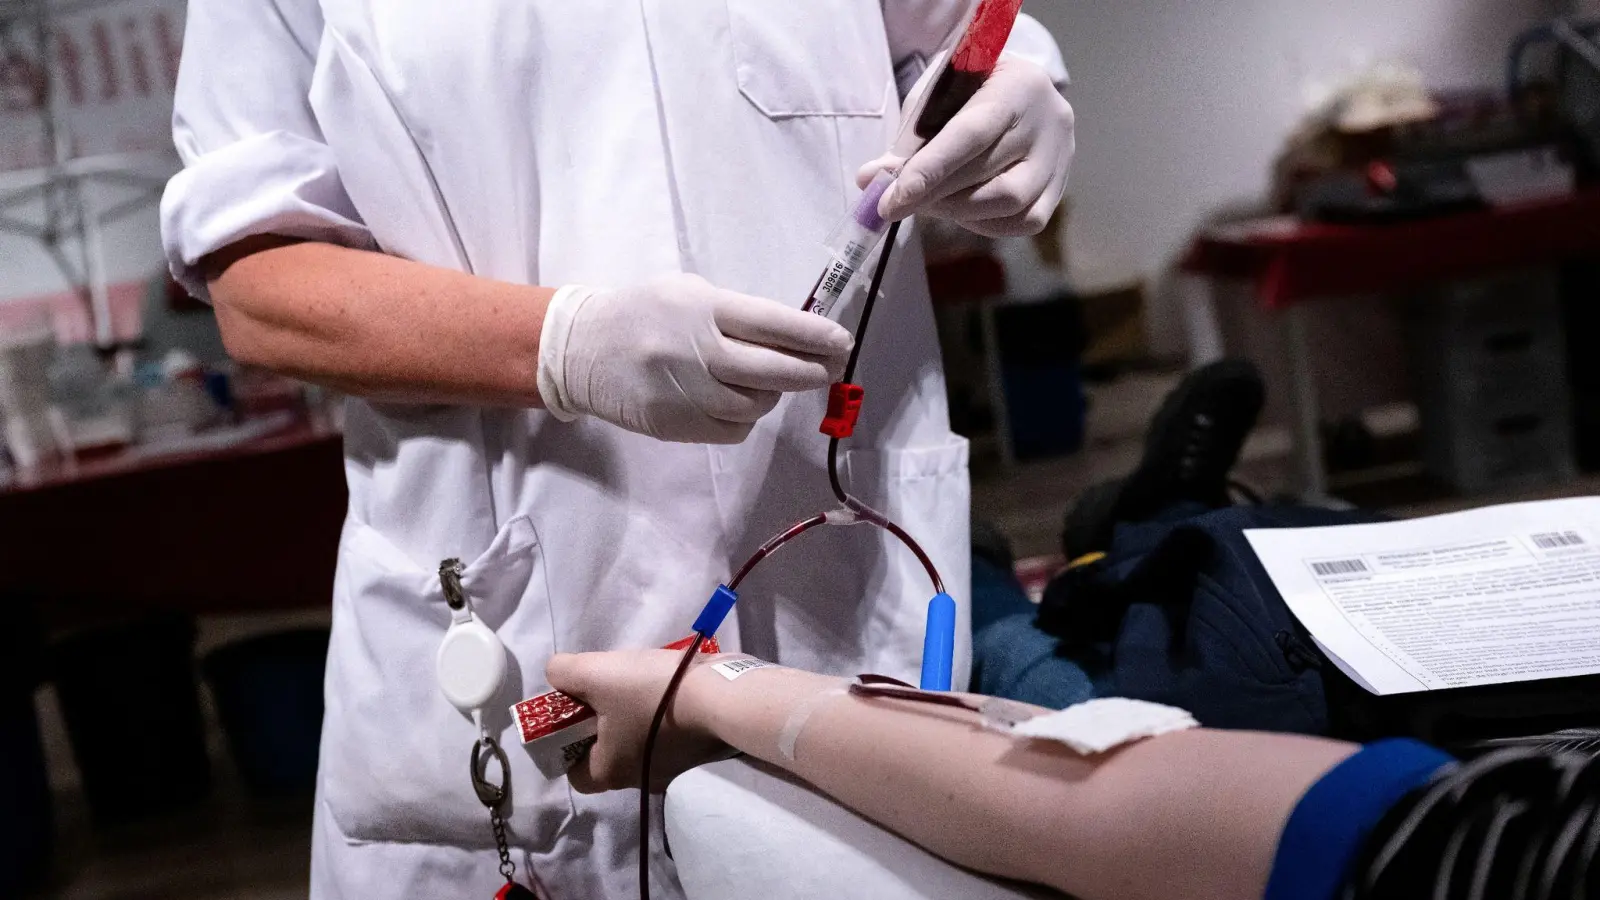 Die Bereitschaft zur Blutspende sinkt seit Jahren - vor allem die junge Generation ist schwer zu erreichen. (Foto: Sven Hoppe/dpa)